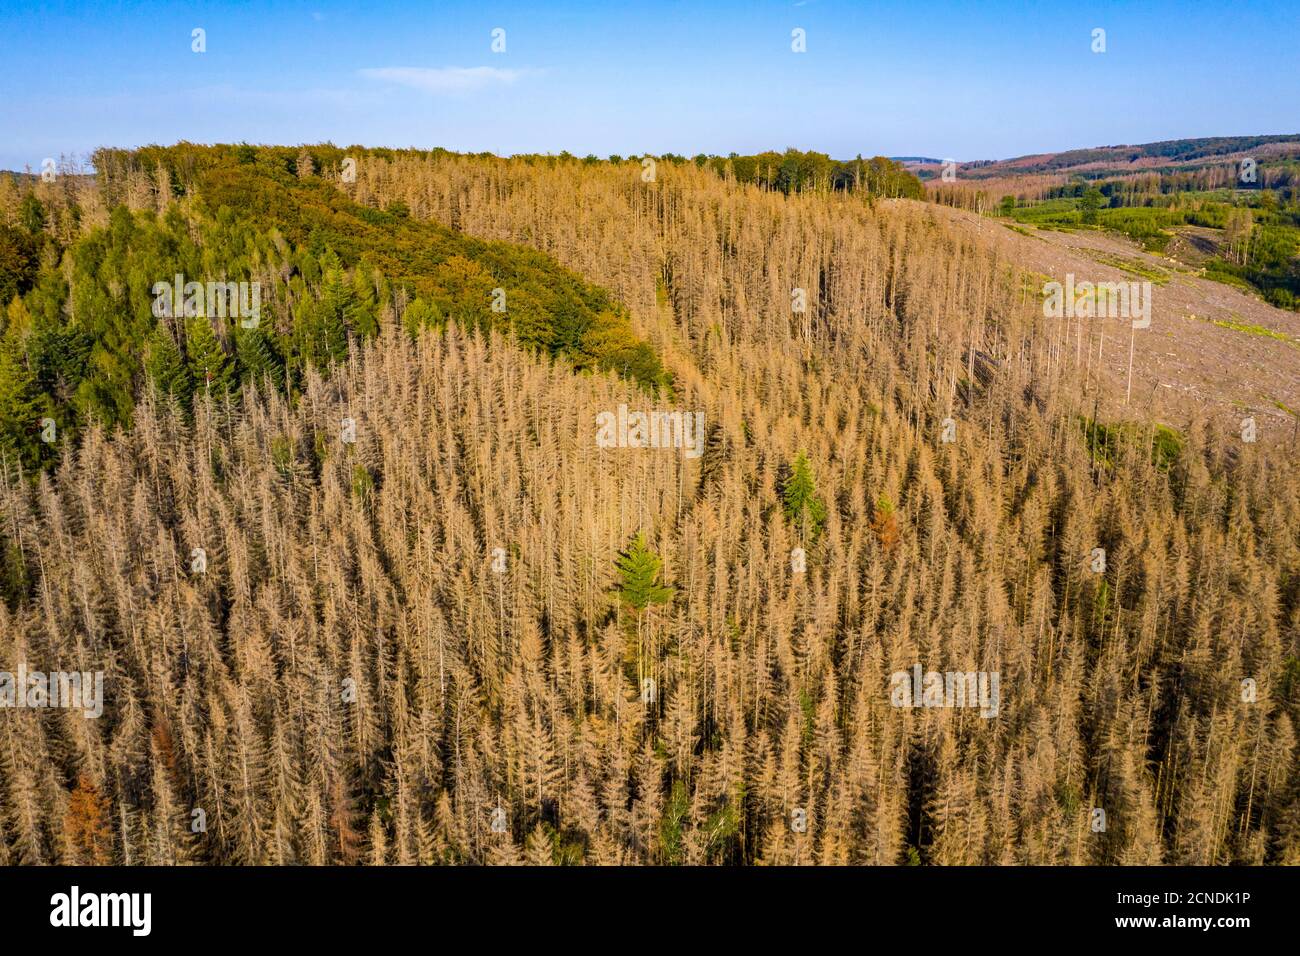 District de Sauerland, dépérissement des forêts, épinettes mortes, causées par le coléoptère de l'écorce, températures élevées, pénurie d'eau, changement climatique, NRW, Allemagne Banque D'Images